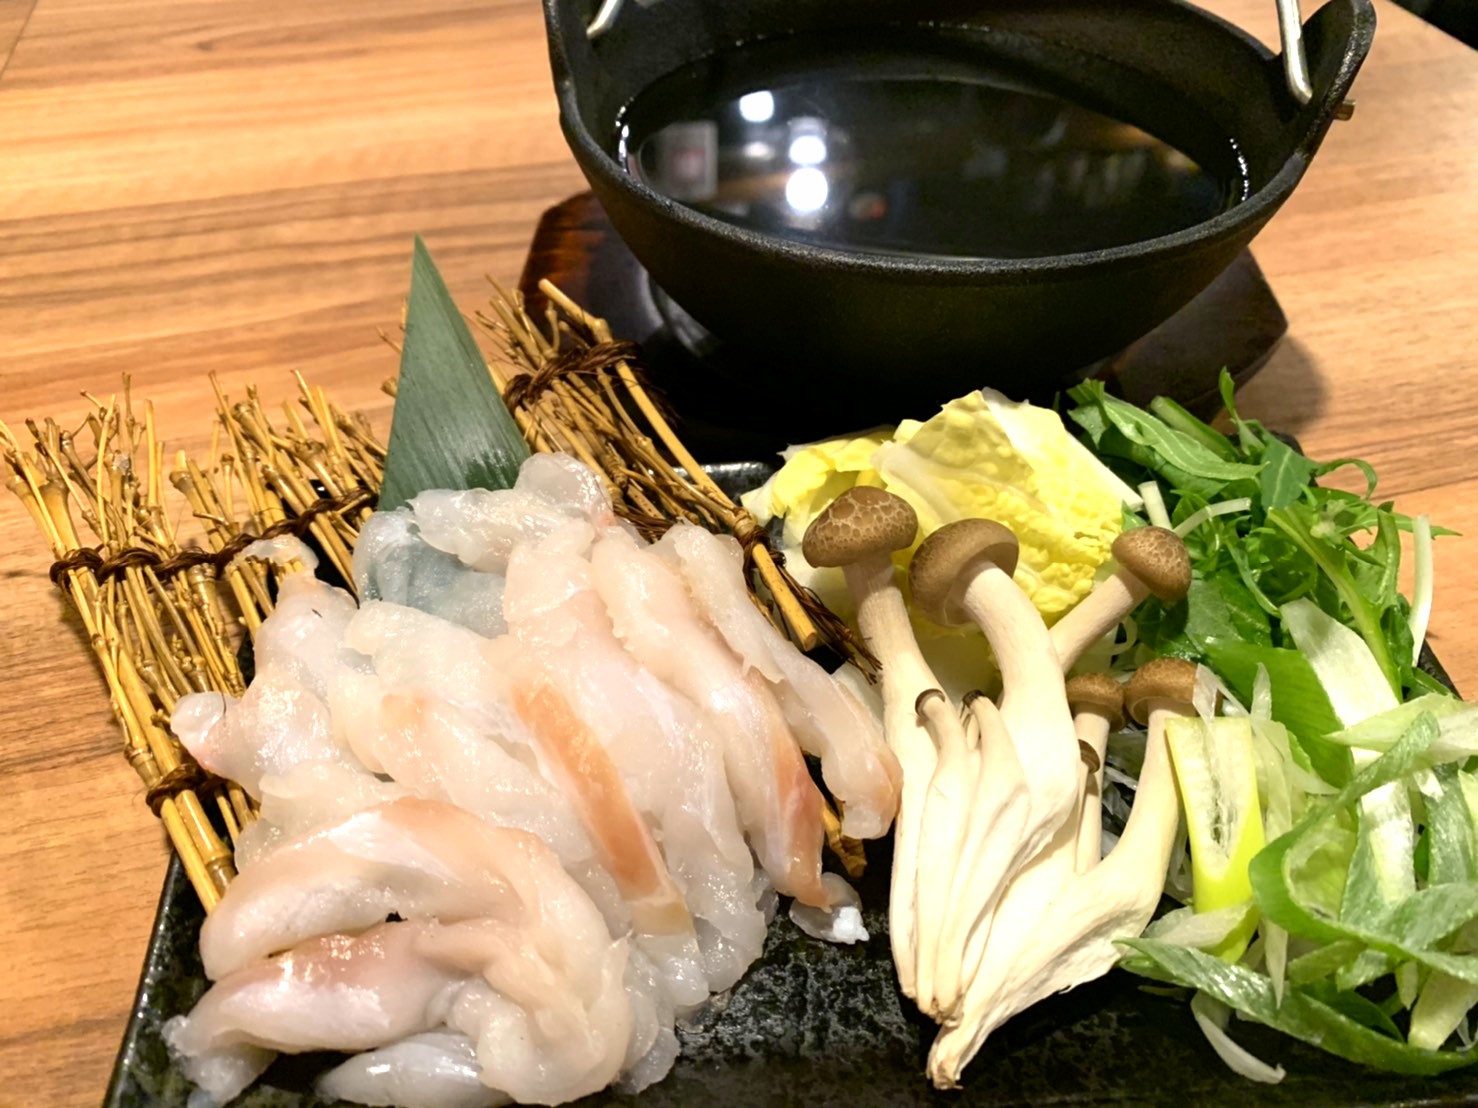 クエのしゃぶしゃぶ 海の恵み 食の底力 Japan 公式レシピサイト